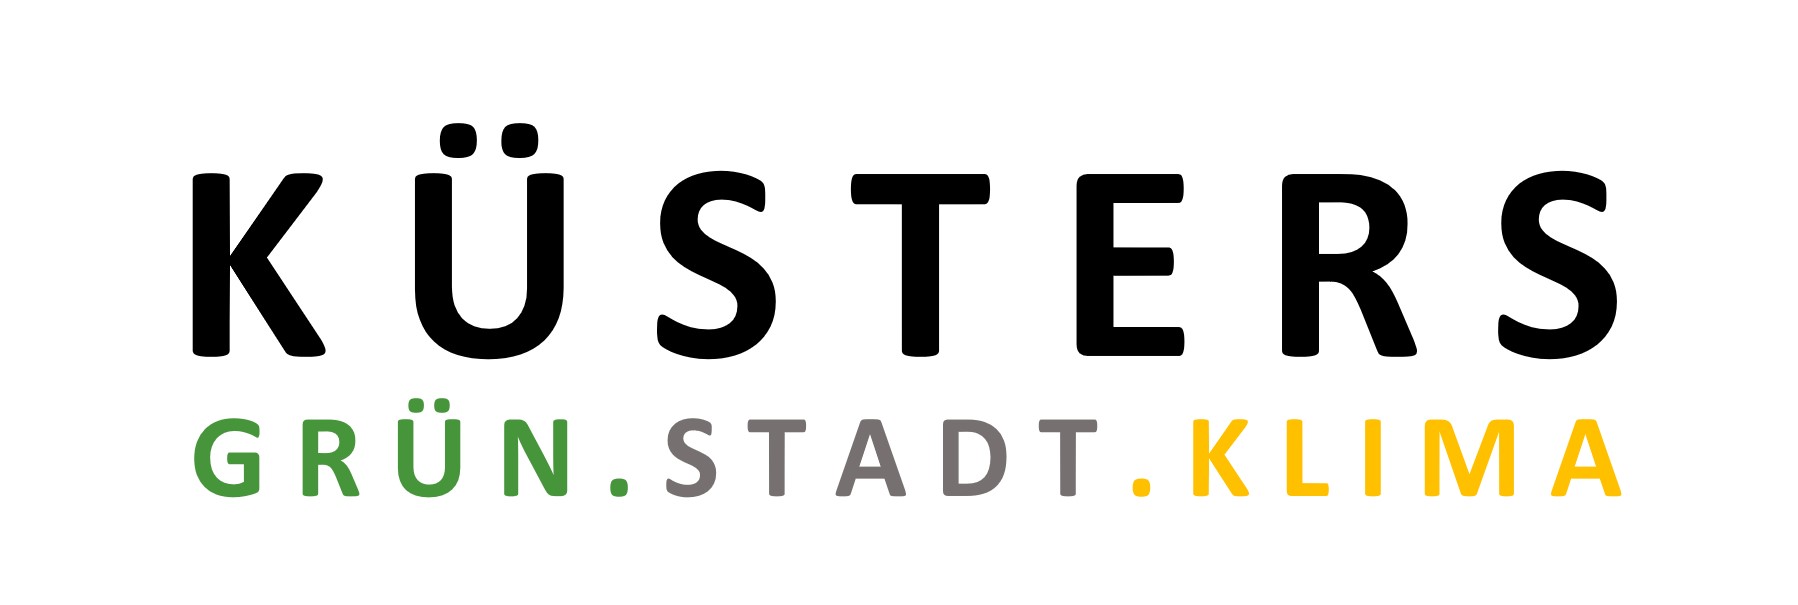 Logo of Küsters Grün Stadt Klima